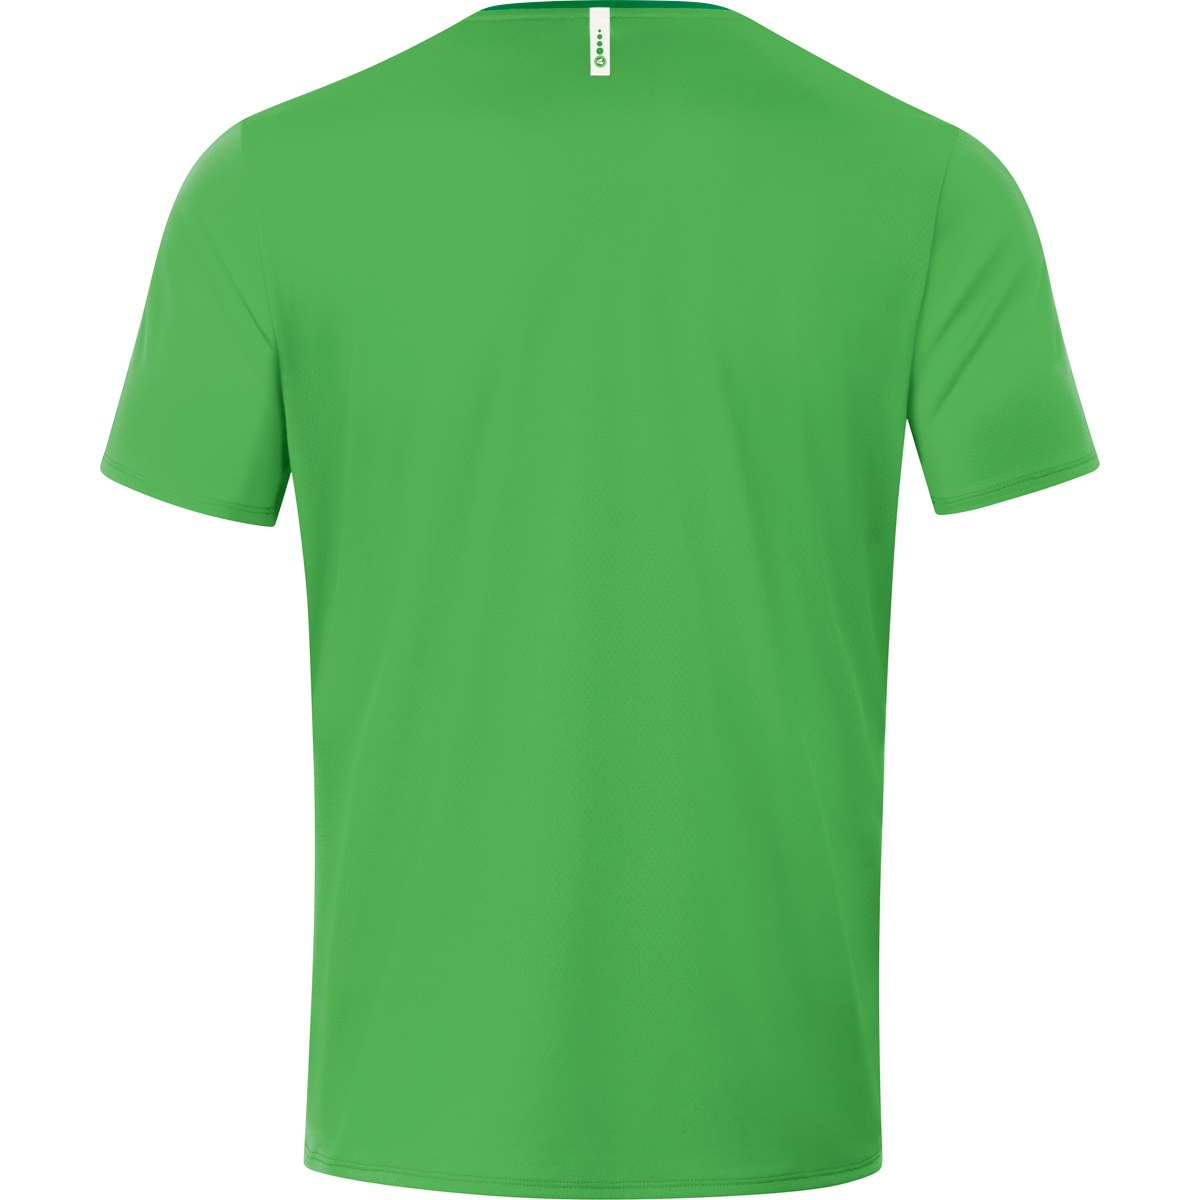 3XL, 6120 JAKO T-Shirt soft green/sportgrün, 2.0 Herren, Champ Gr.